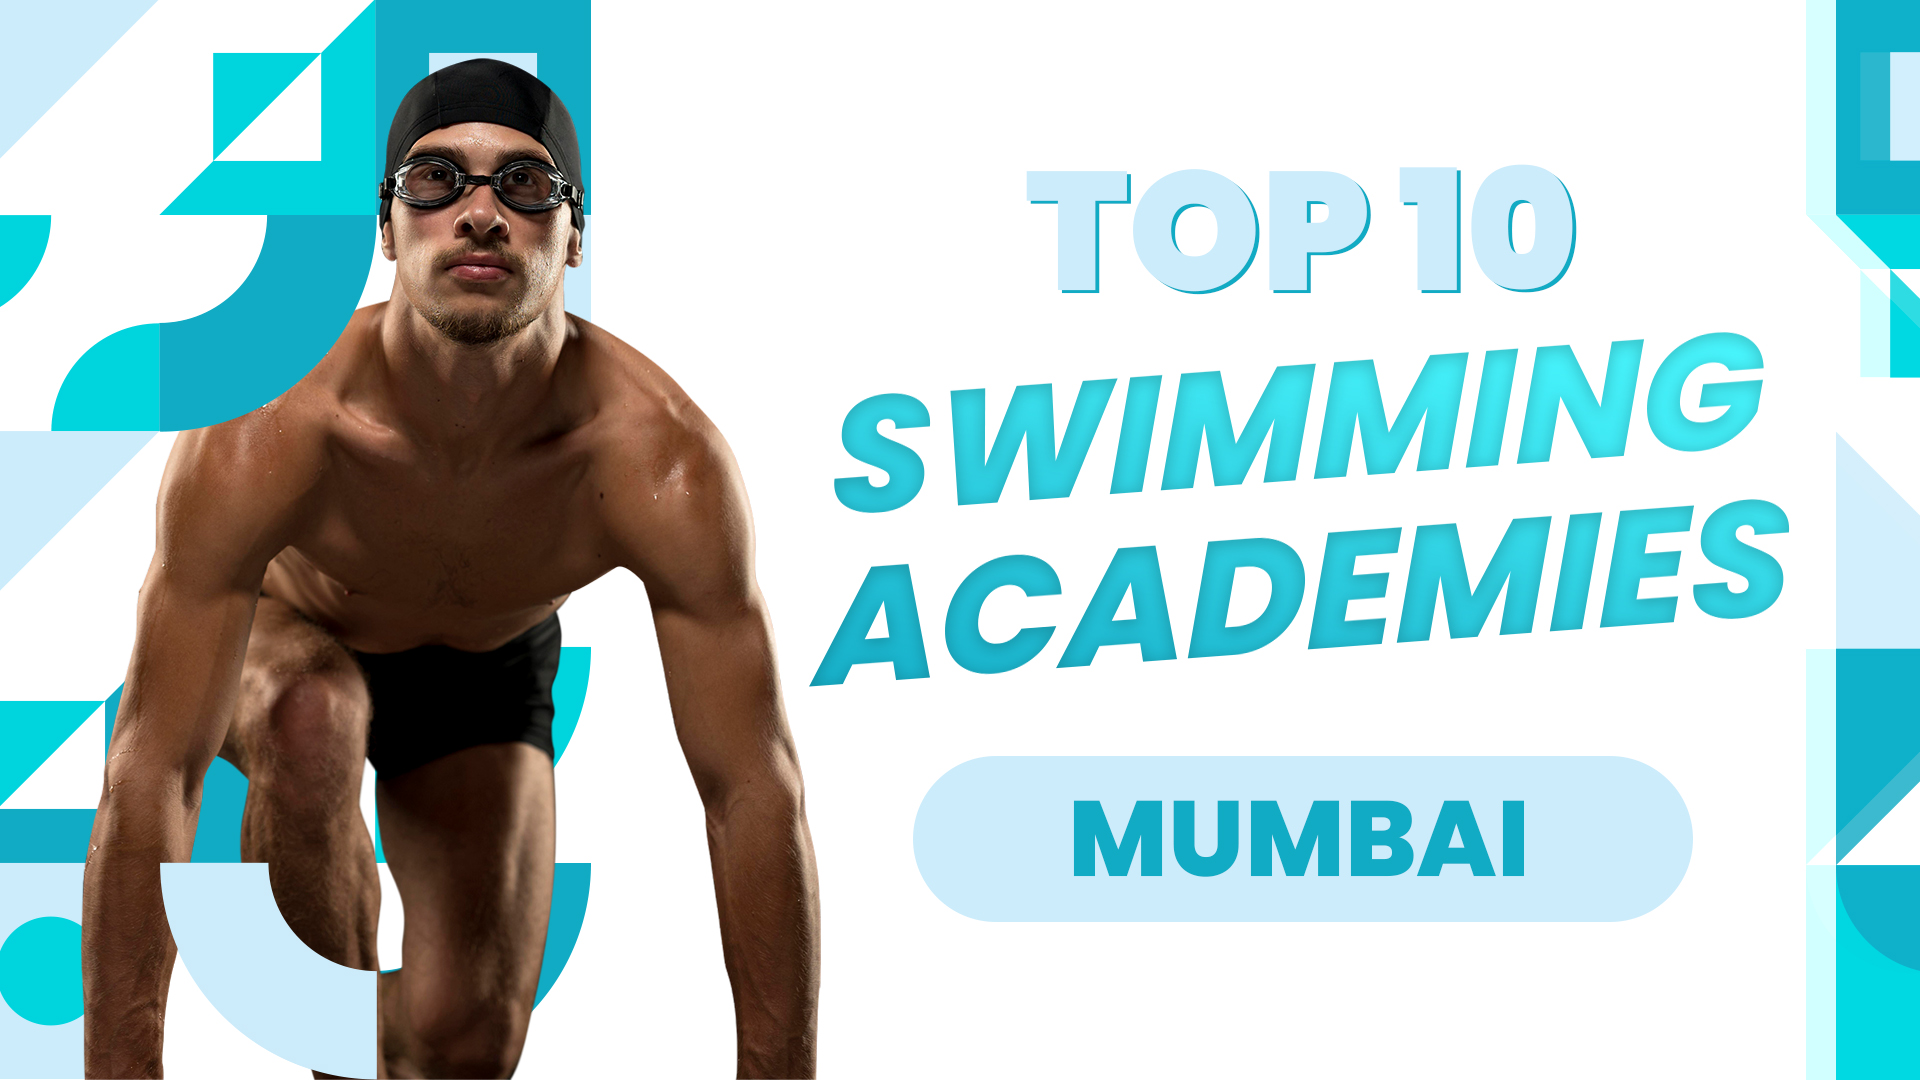 Top 10 Swimming Academies in Mumbai, India